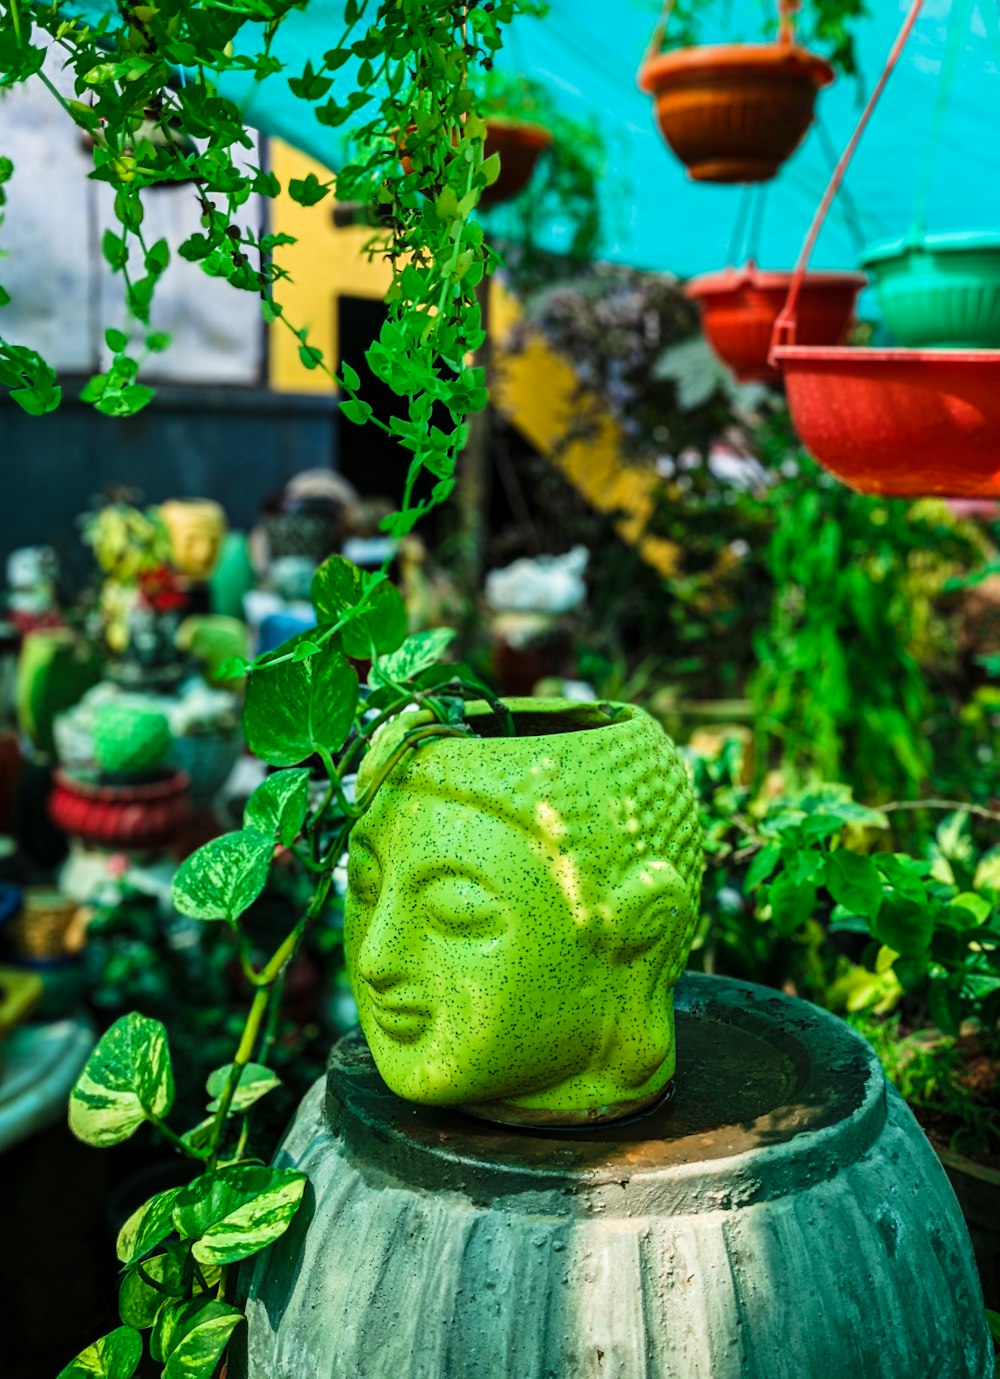 Una cabeza de Buda verde sentada encima de una planta en maceta